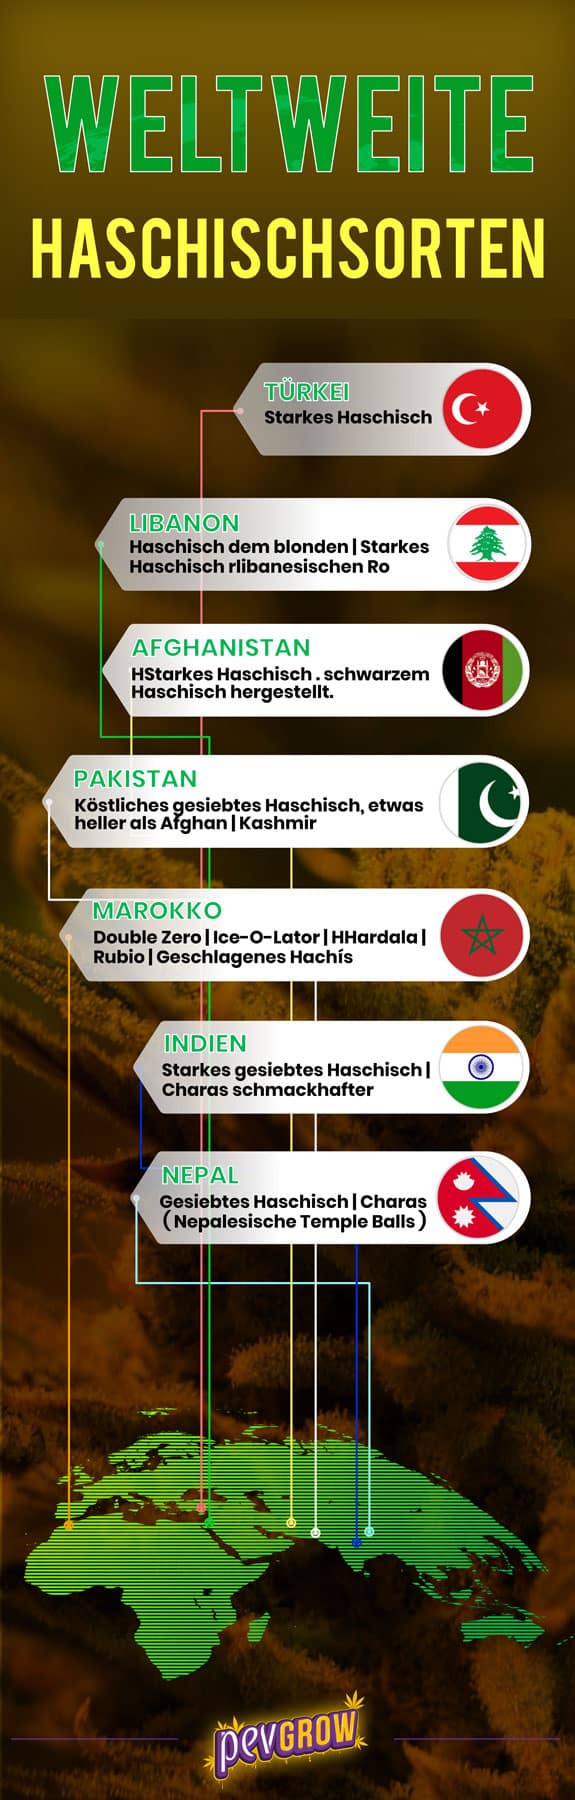 Infografik über die verschiedenen Haschischsorten in der Welt.